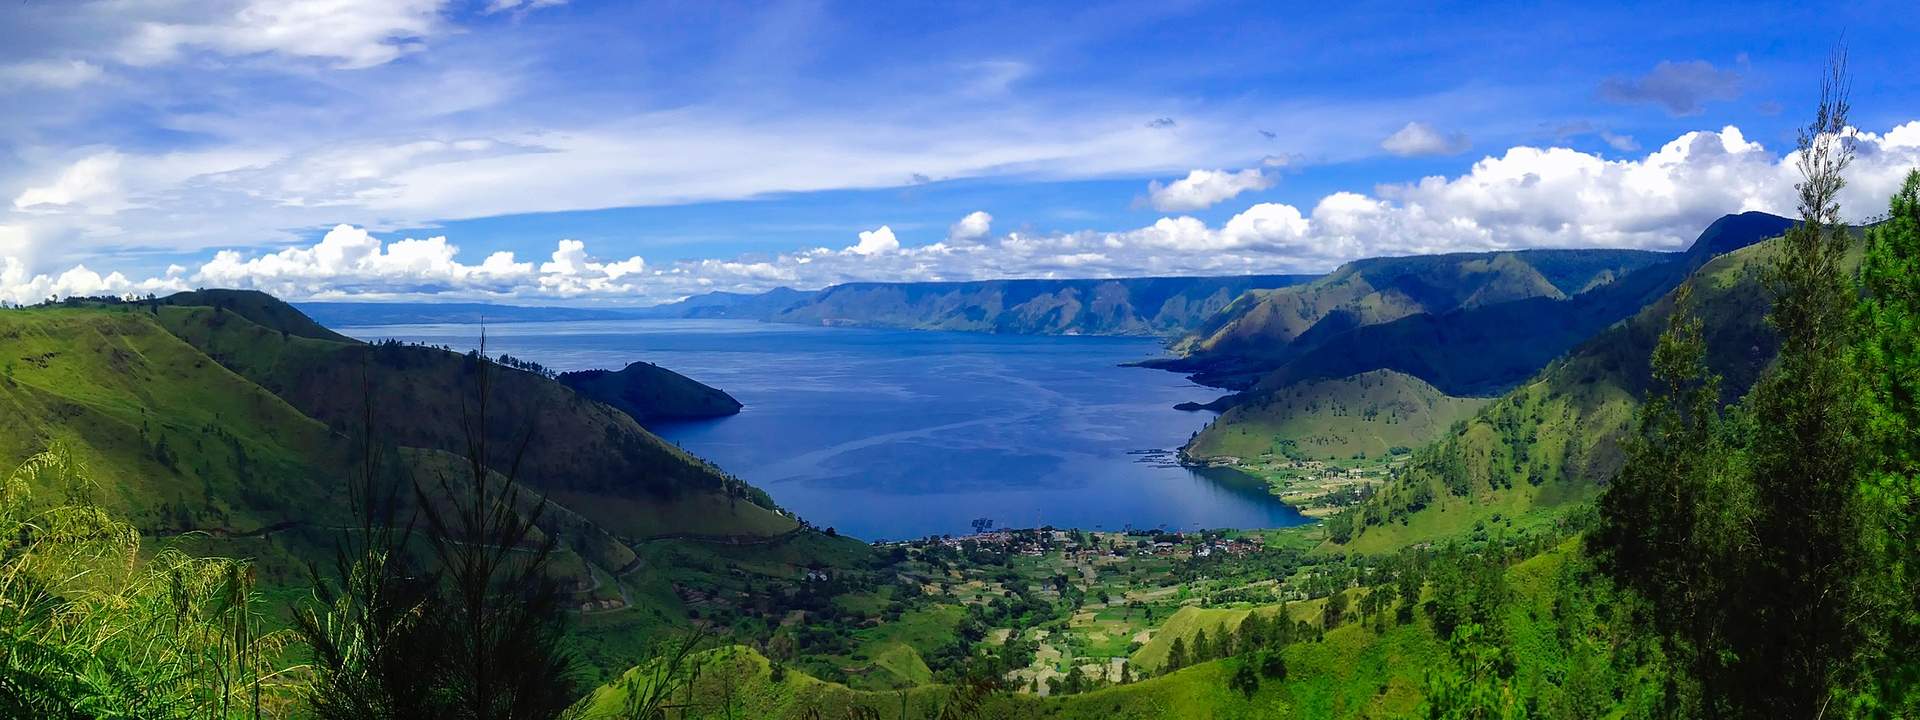 Незабываемый круиз по крупнейшему в мире архипелагу – Индонезии